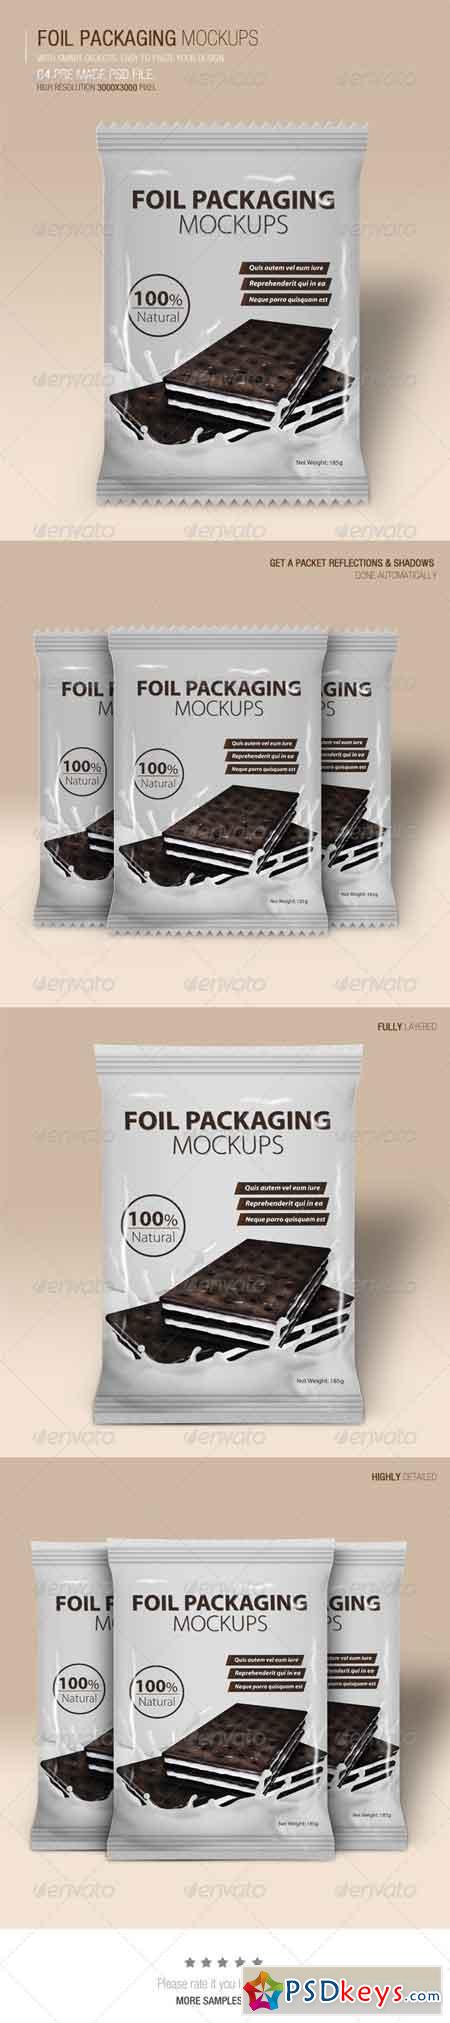 Foil Packaging Mockups Vol.2 6593106